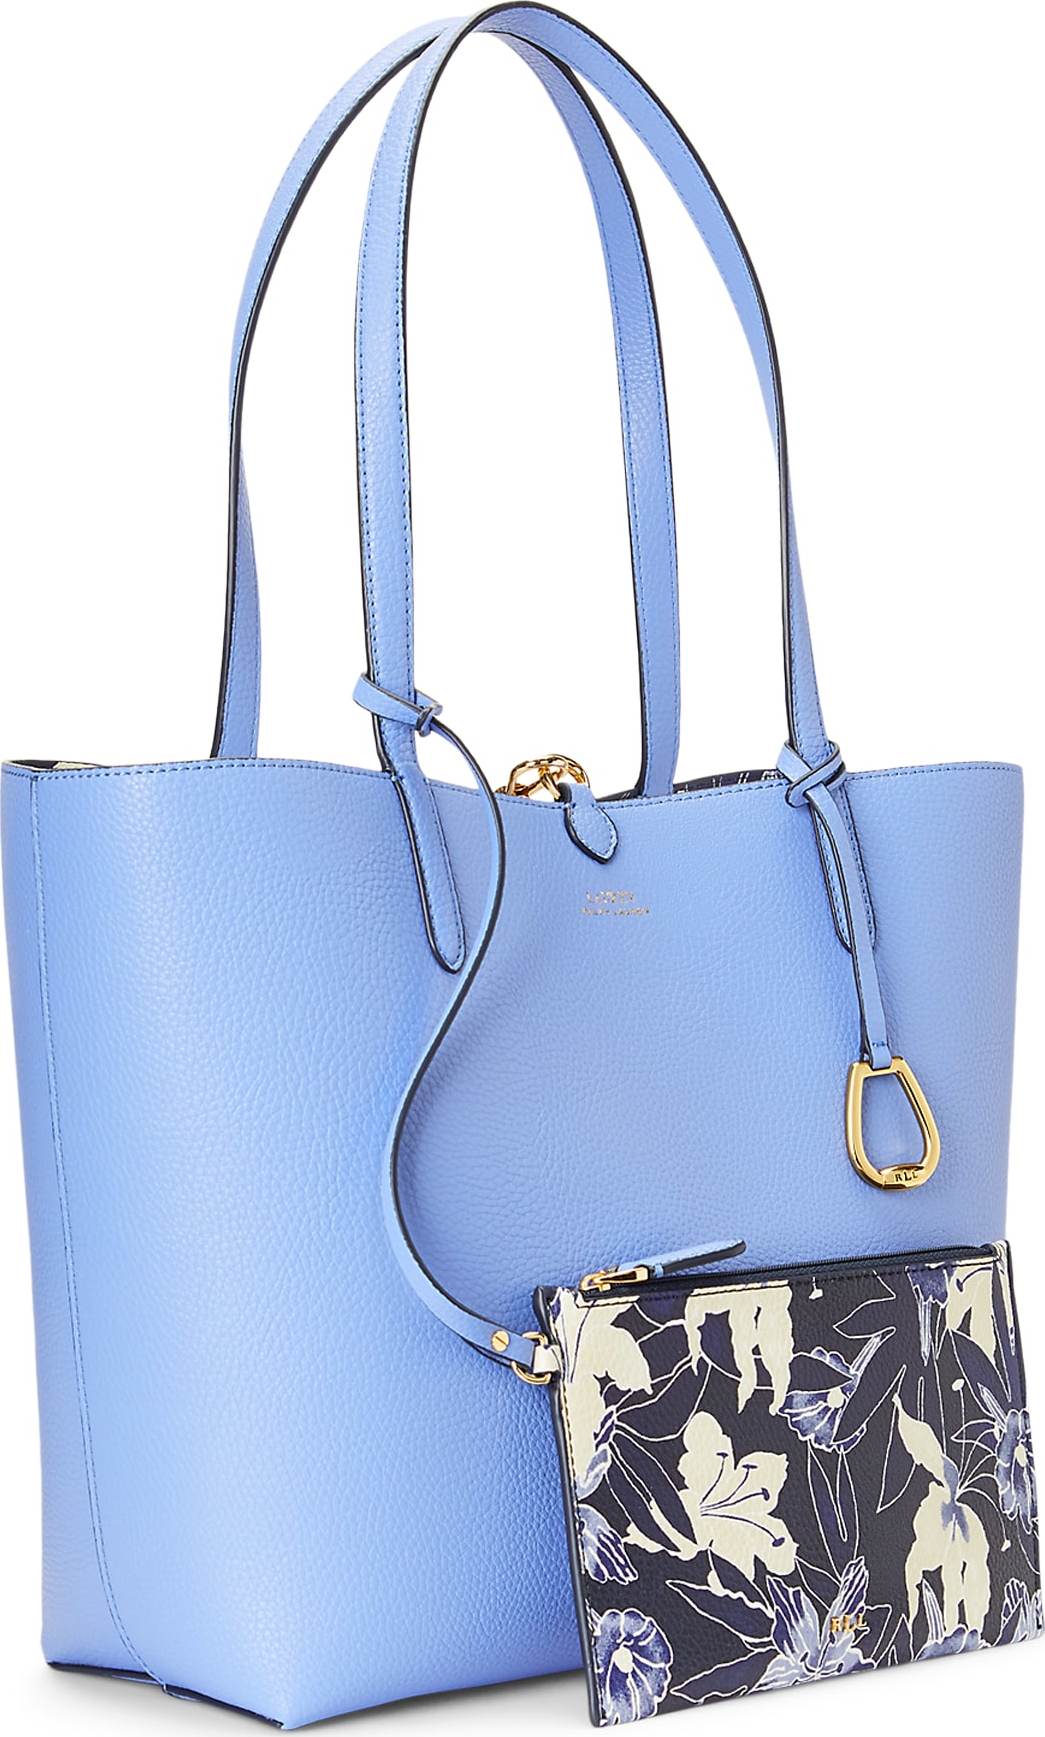 Lauren Ralph Lauren Nákupní taška nebeská modř